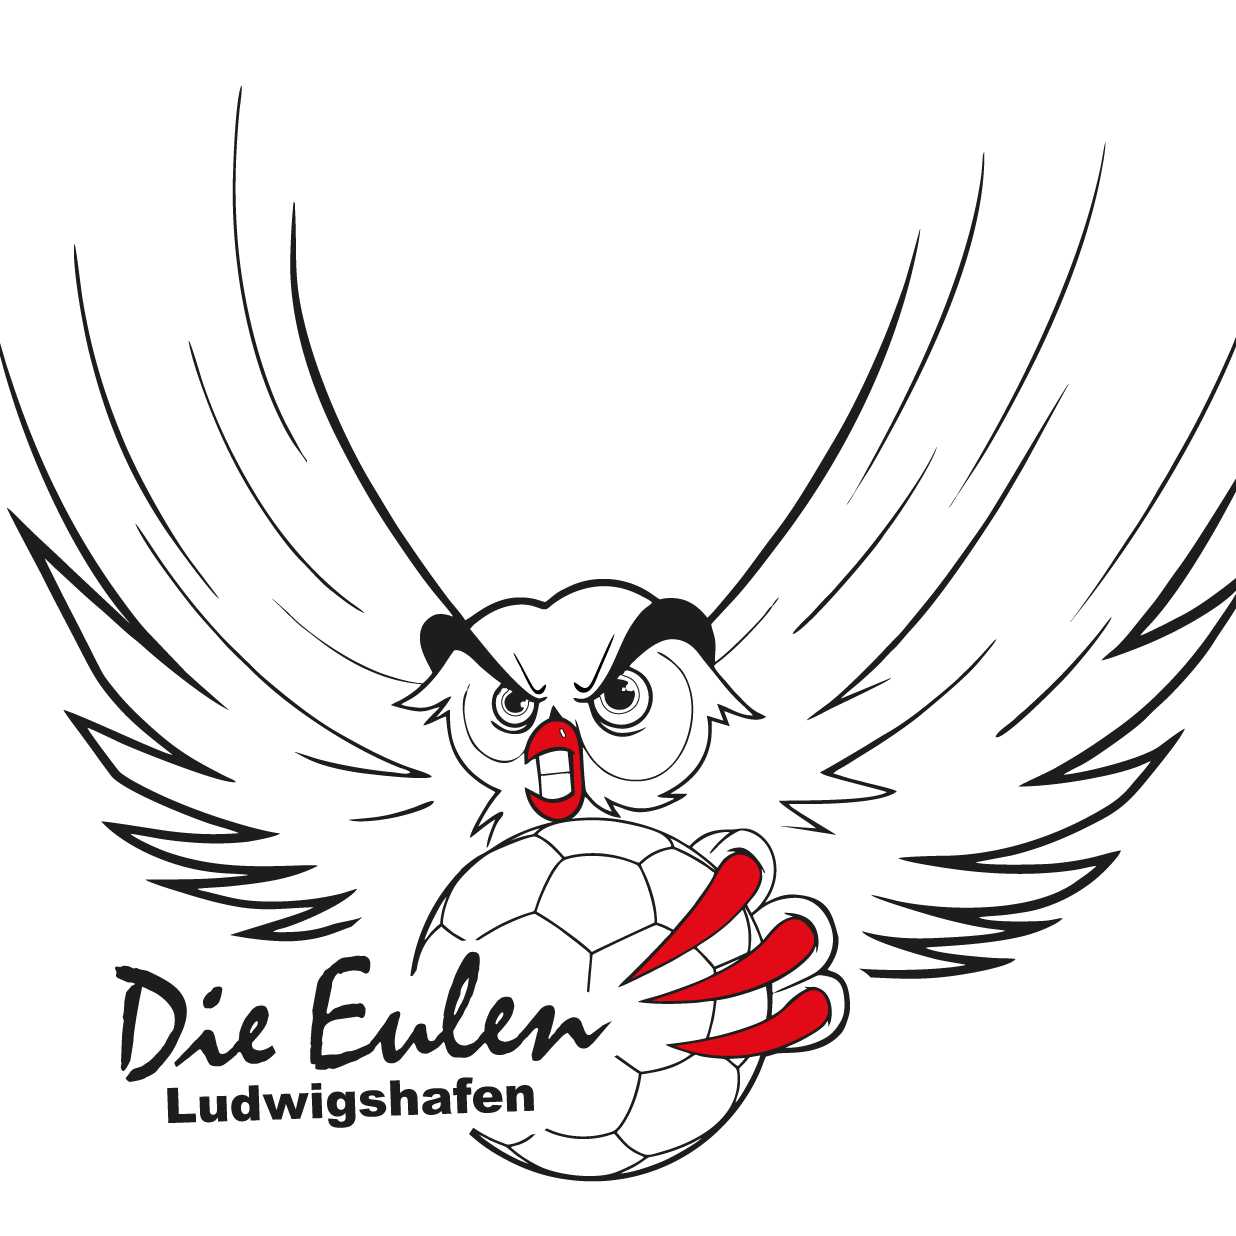 Die Eulen Ludwigshafen